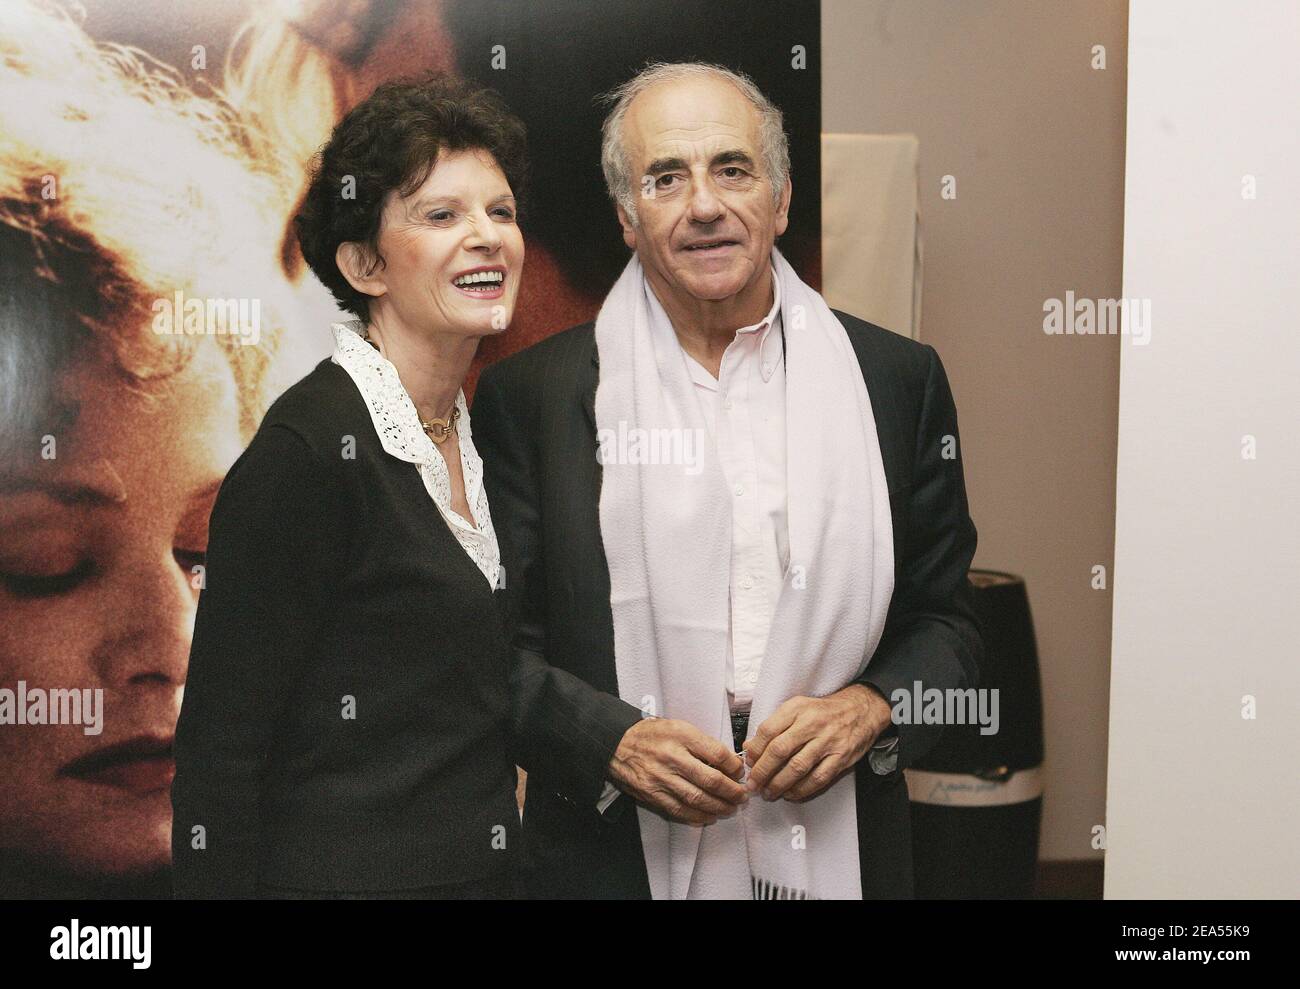 Le journaliste français Jean-Pierre Elkabbach et son épouse auteur Nicole  avril assistent à la première du film de Patrice Chereau 'Gabrielle', qui  s'est tenu au cinéma Arlequin à Paris, en France, le